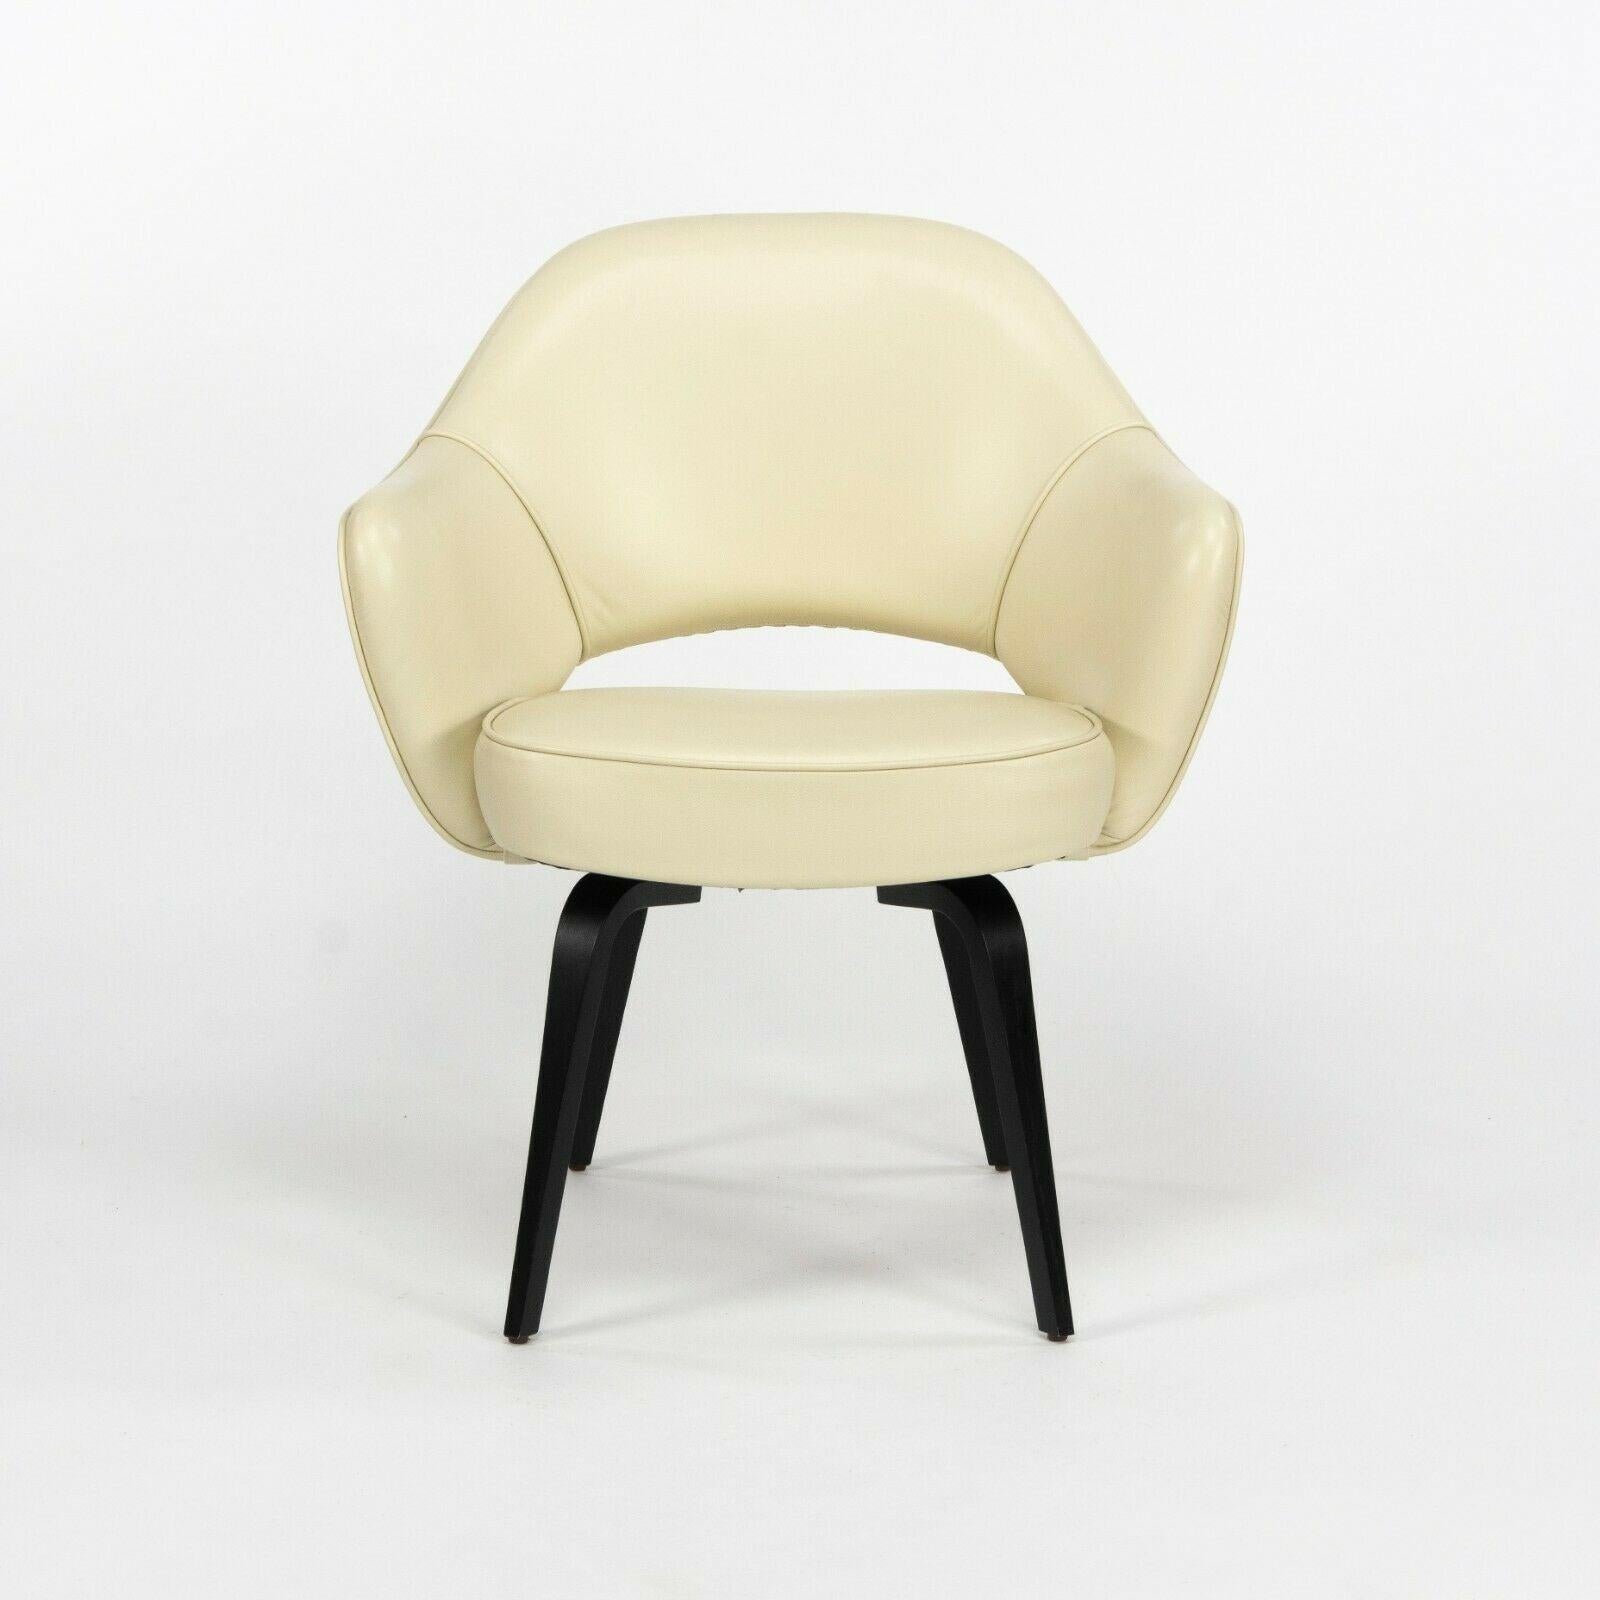 Zum Verkauf steht ein 2020 produzierter Eero Saarinen für Knoll Executive Sessel mit elfenbeinfarbenem/weißem Lederbezug und ebonisierten Walnussholzbeinen. Die Polsterung scheint aus Volo-Leder von Knoll oder ähnlichem zu bestehen. Die Farbe ist